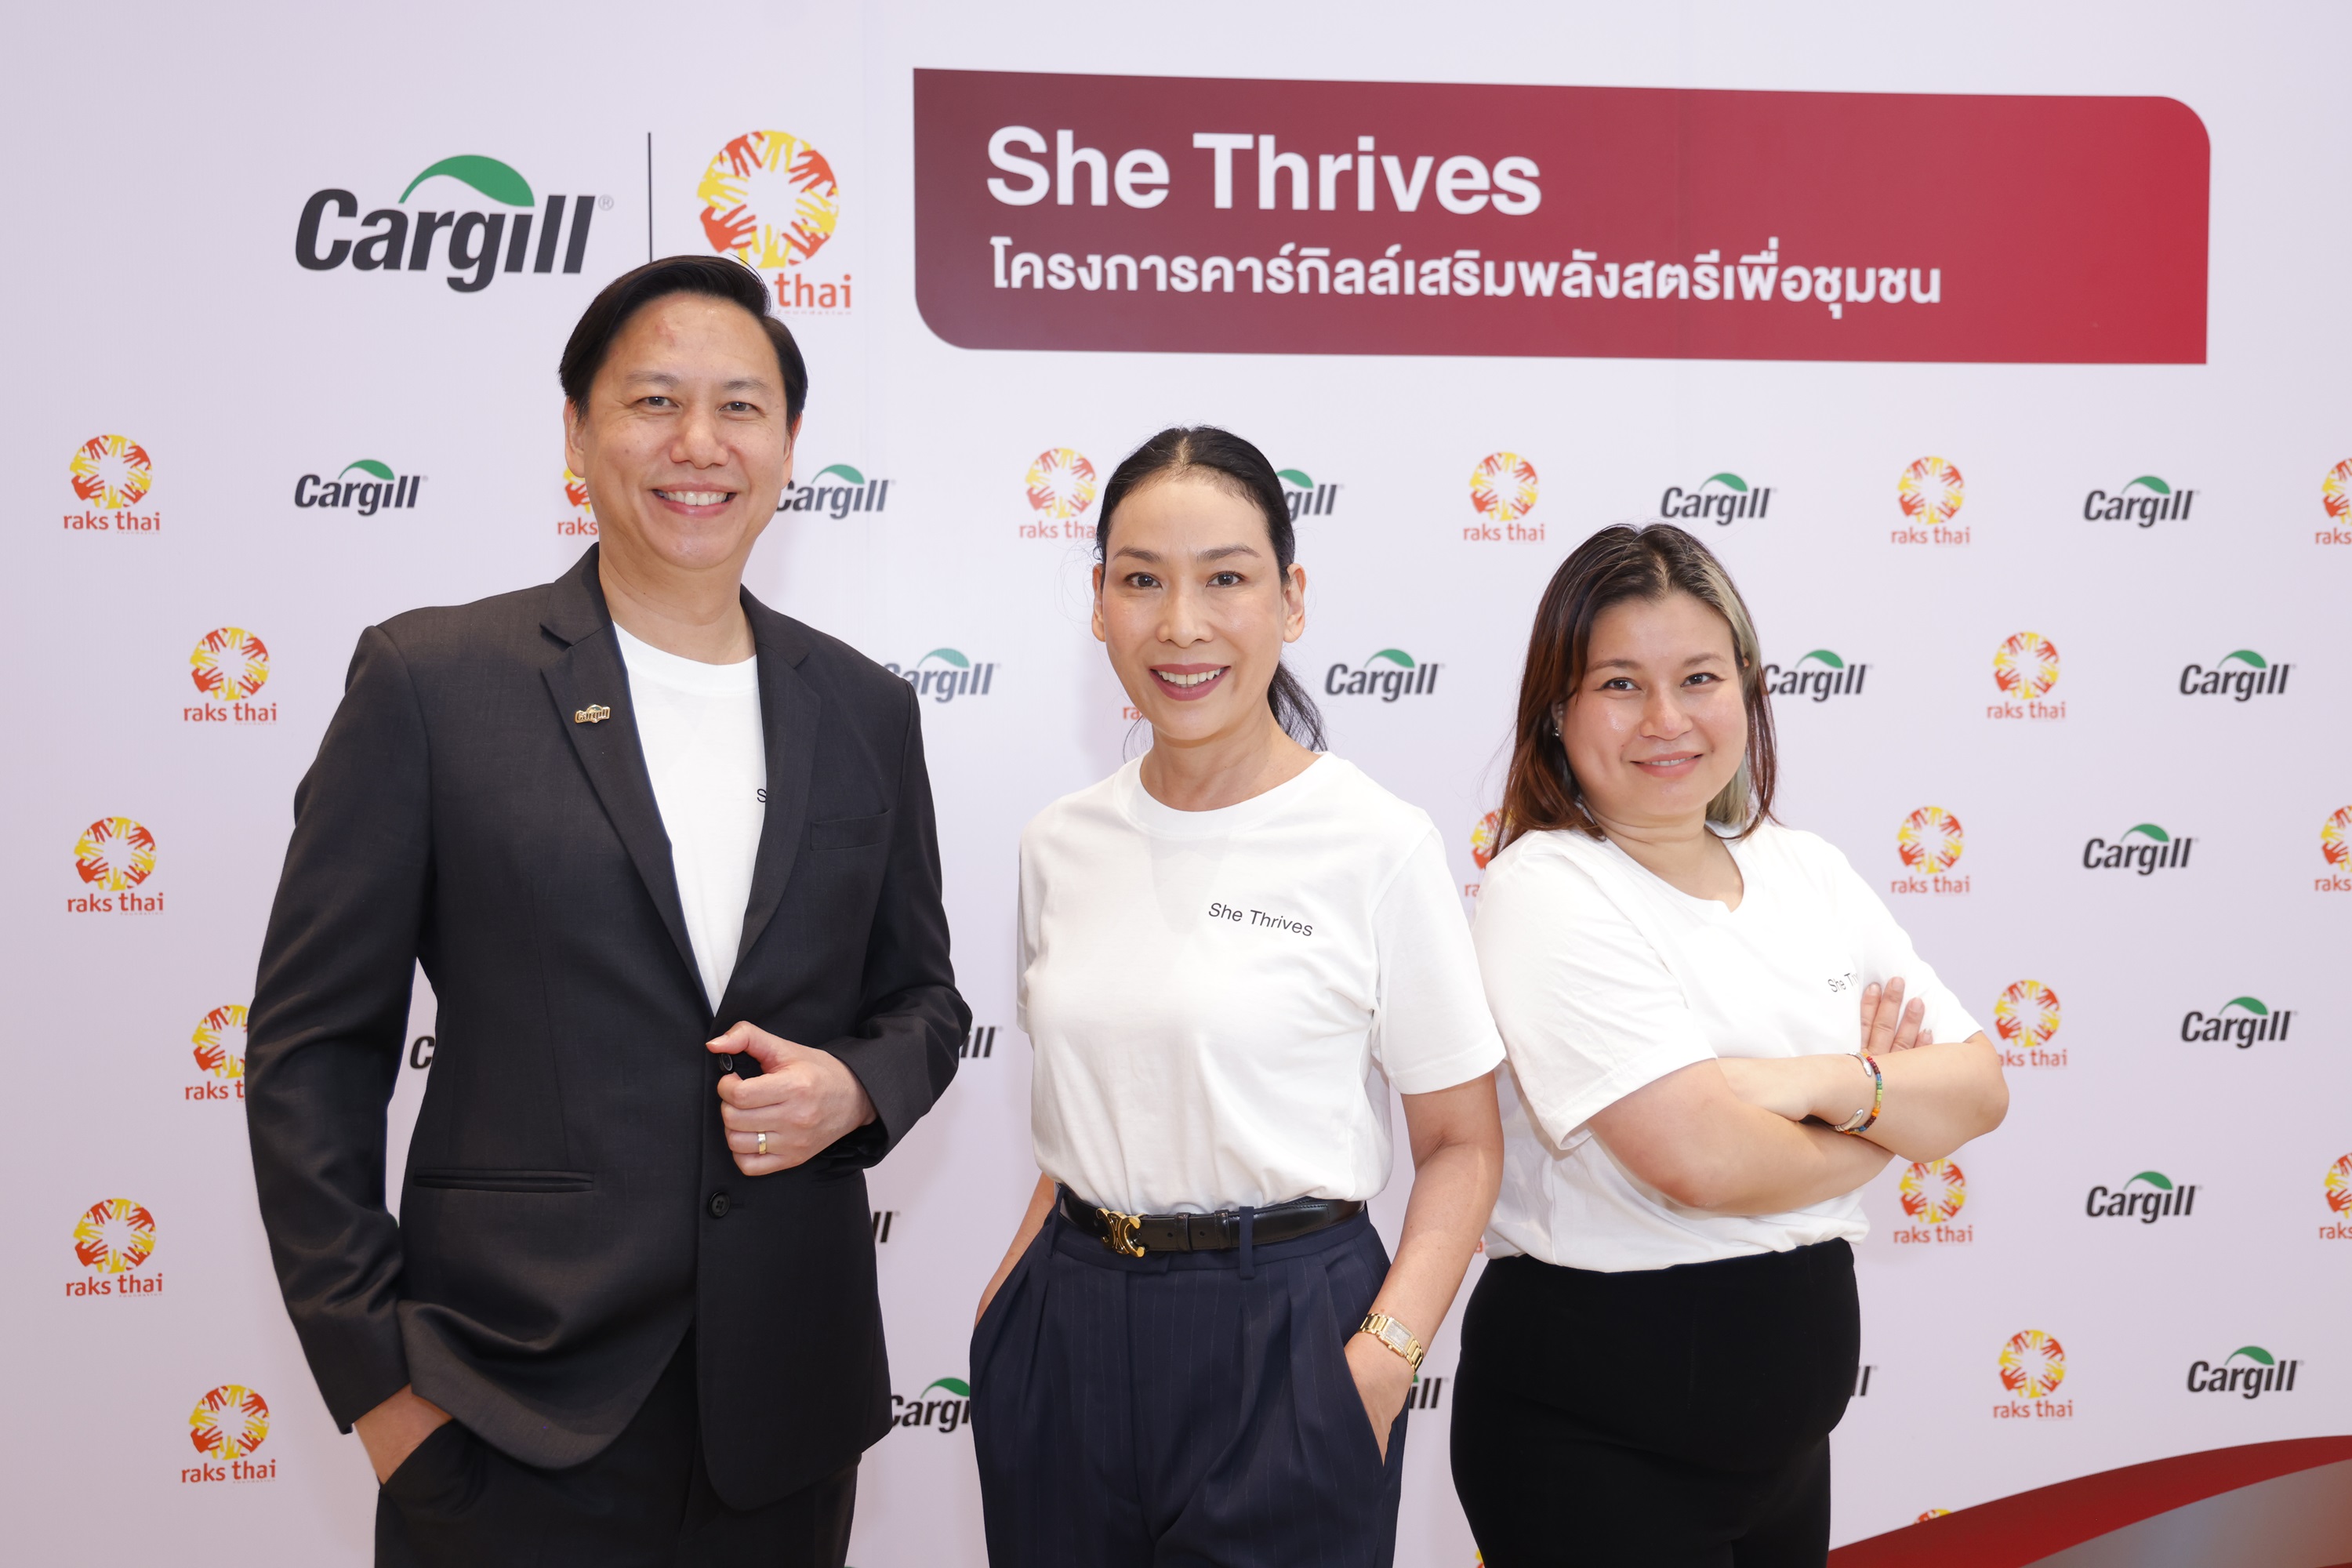 คาร์กิลล์ ผลักดันศักยภาพสตรีไทย จับมือมูลนิธิรักษ์ไทย เปิดตัวโครงการ “She Thrives” เสริมรายได้ สร้างคุณภาพชีวิตที่ดีให้ชุมชน